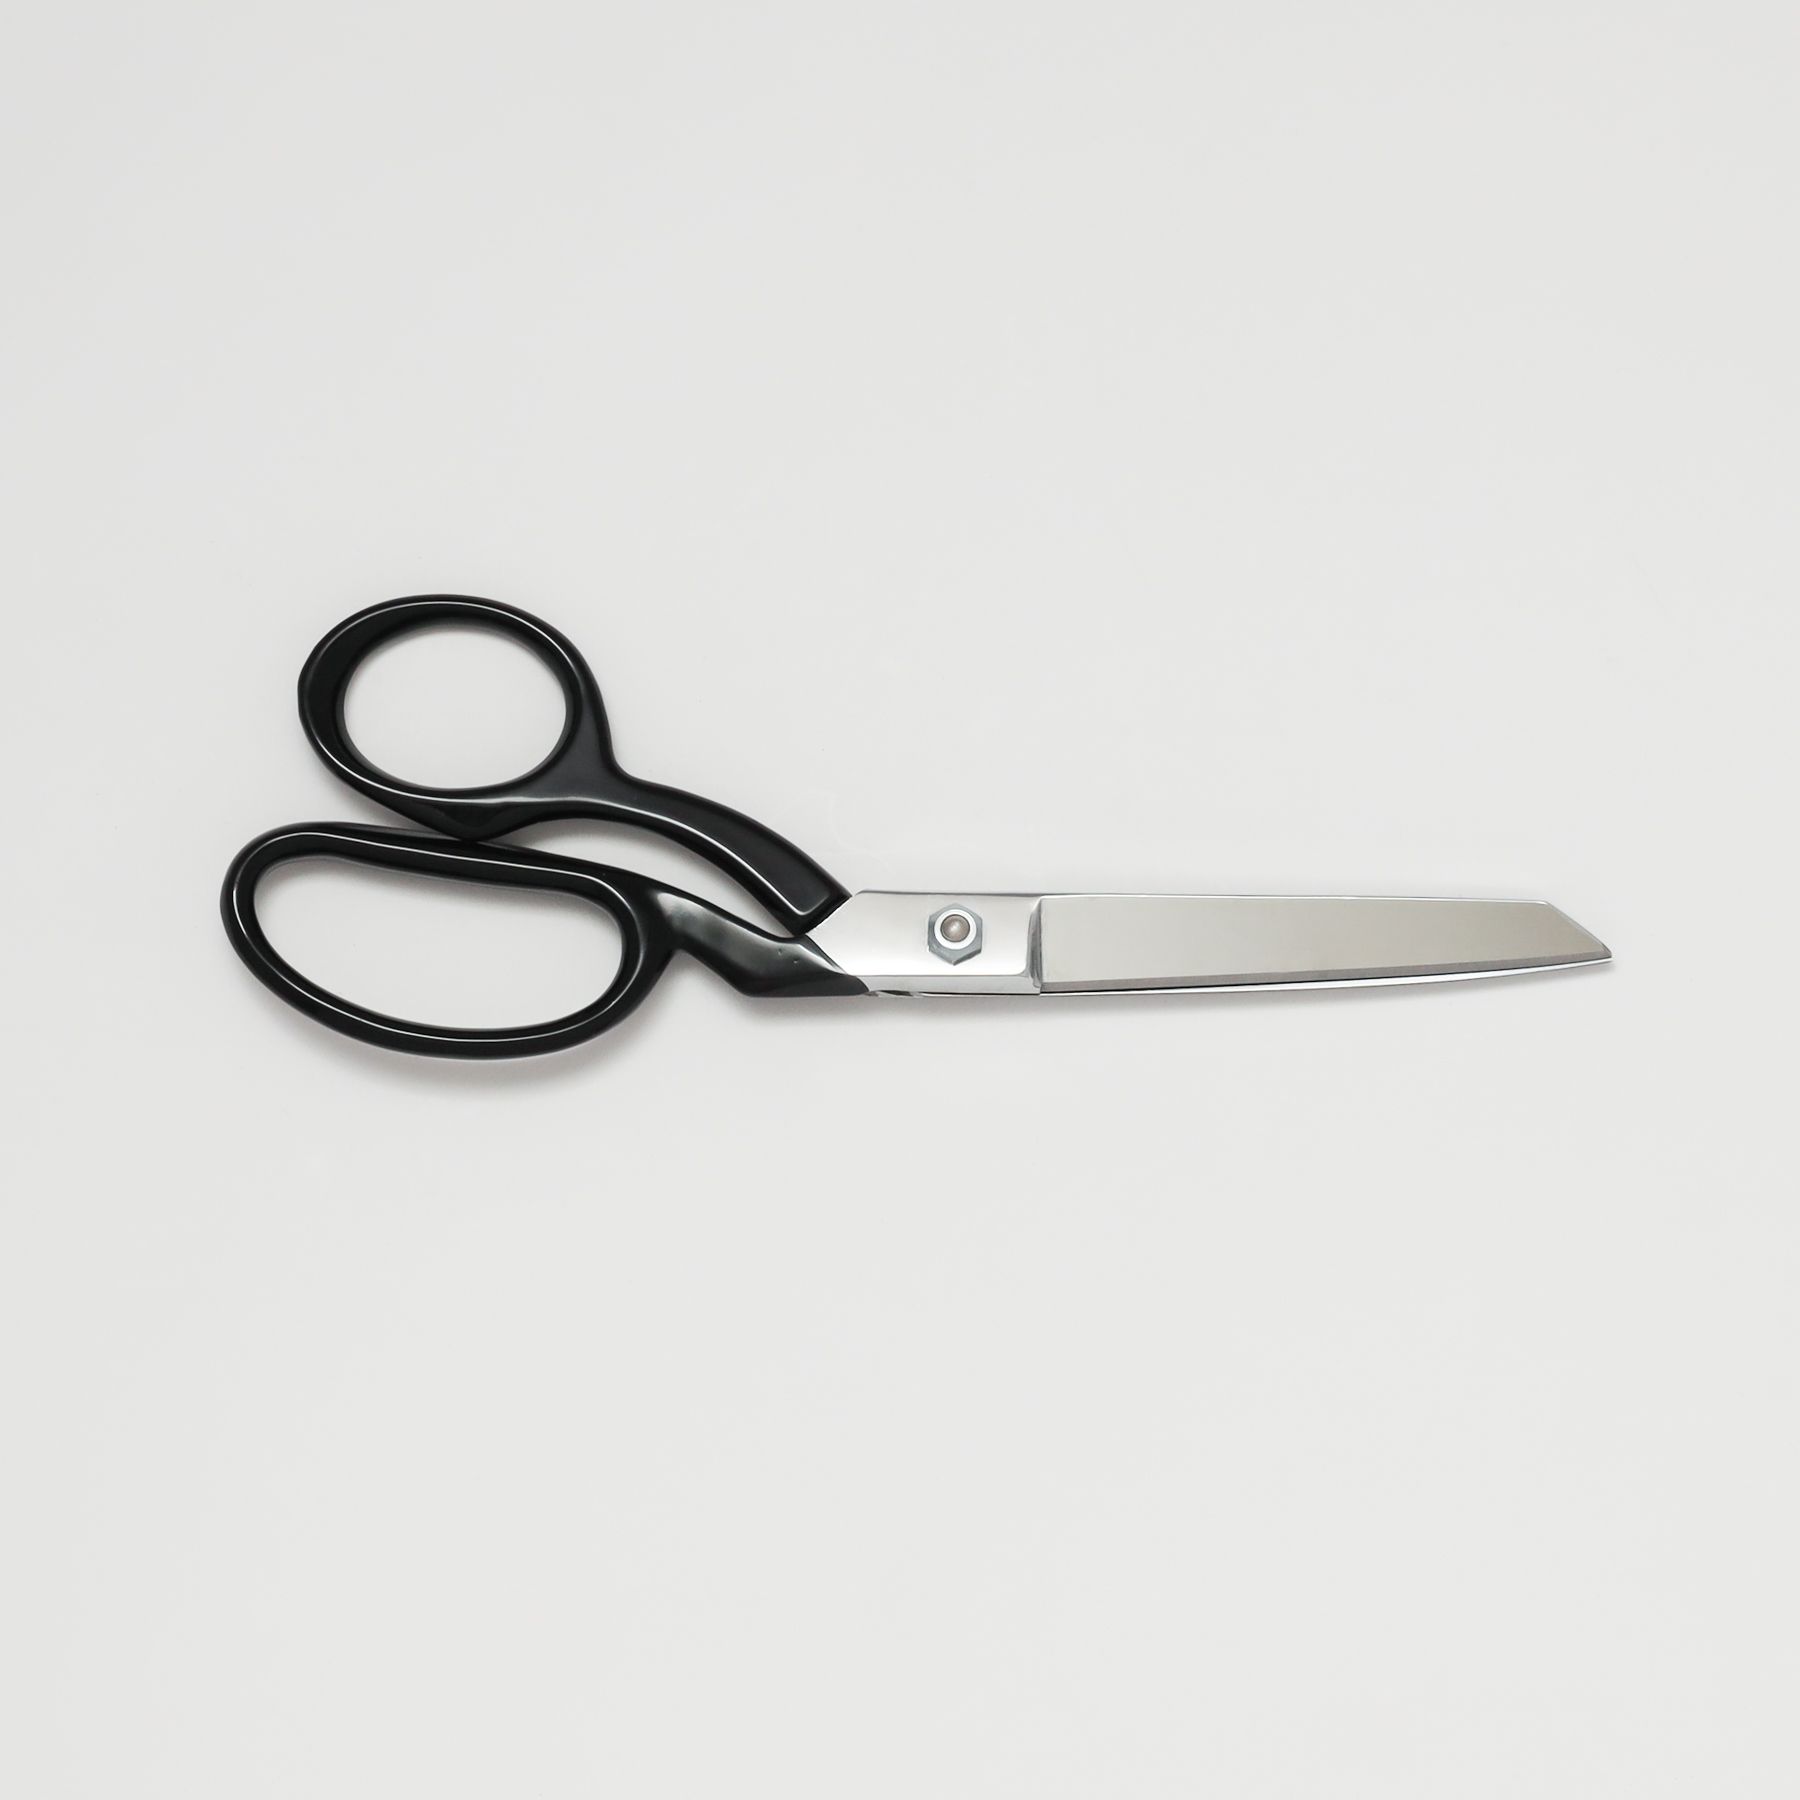 Tailor’s 8″ Scissors